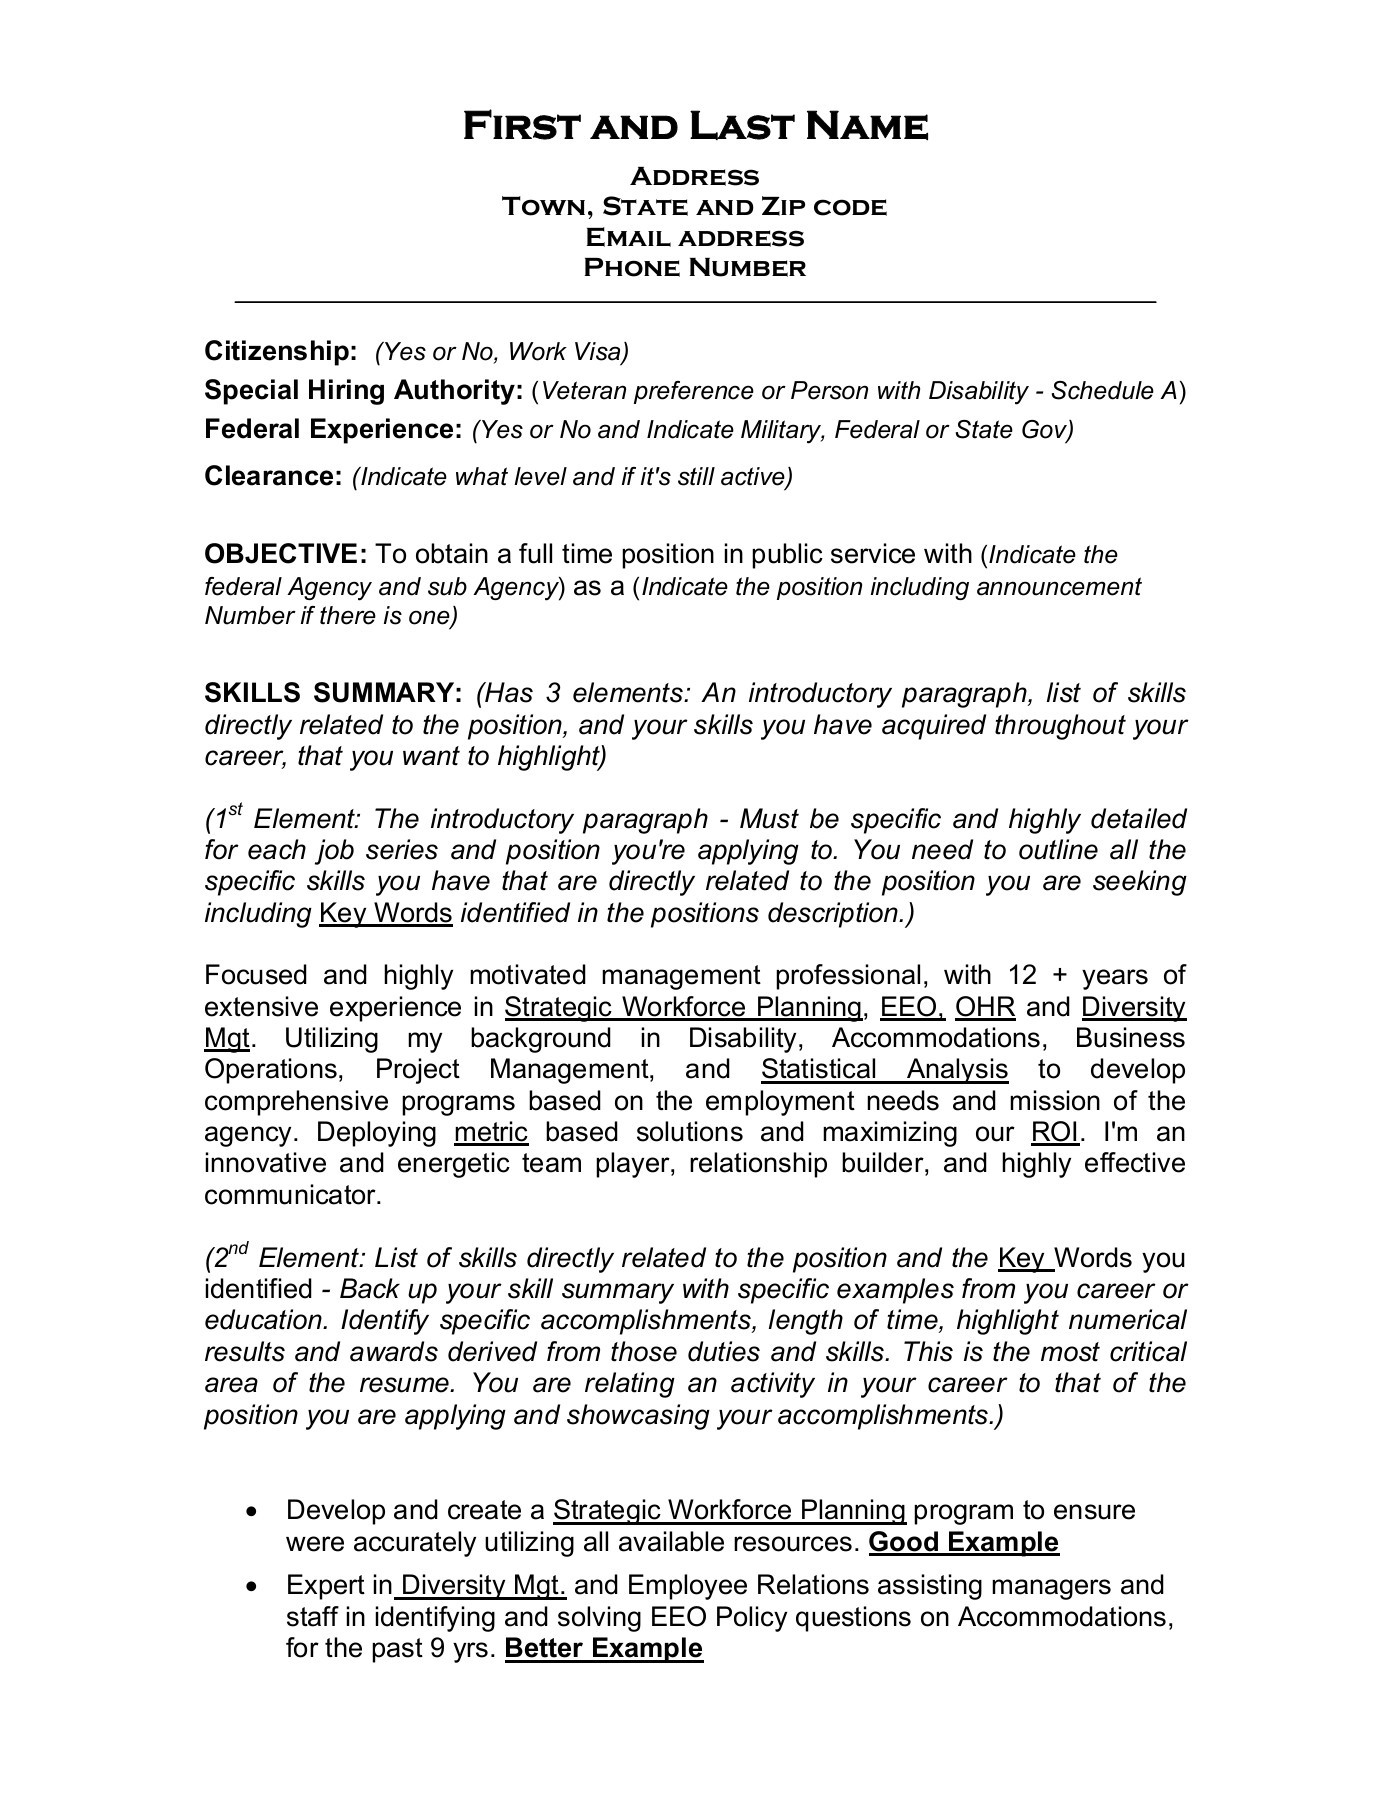 Federal Resume Template 1 federal resume template|wikiresume.com